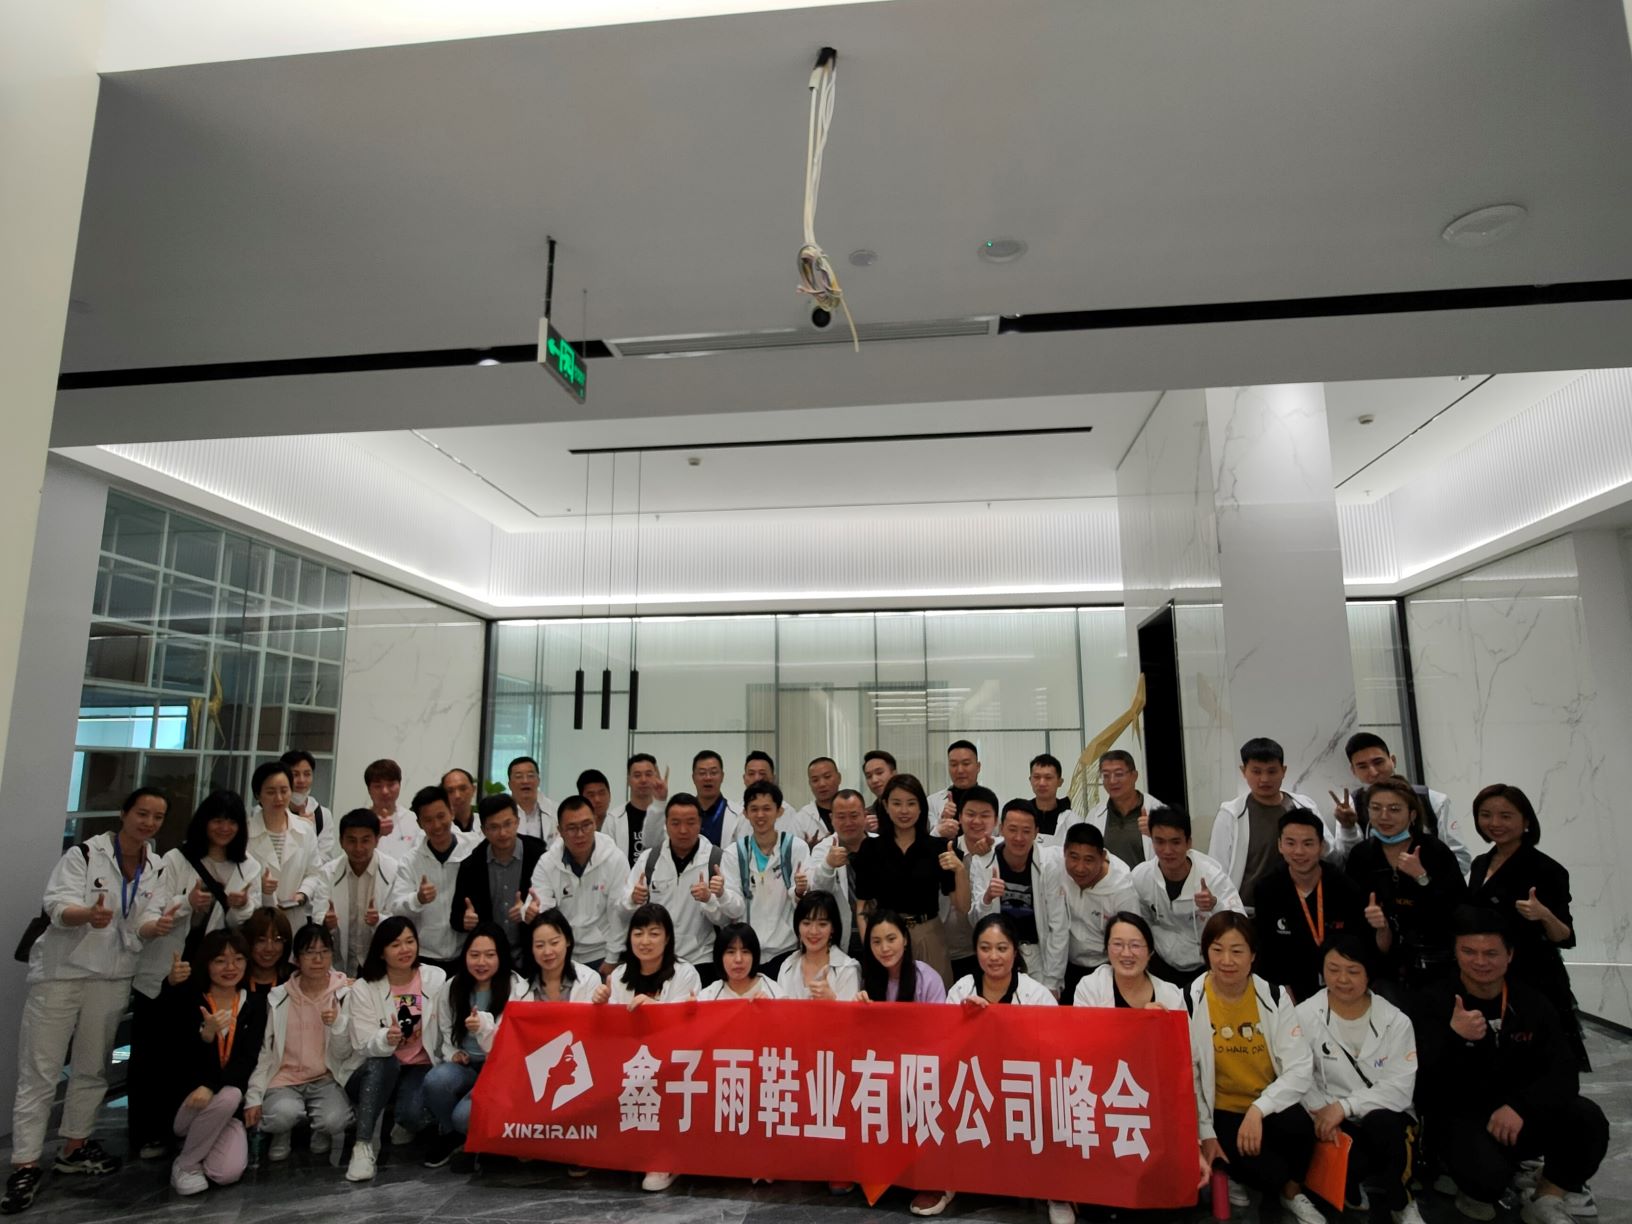 Cezhraničná trieda Tianfu do lídra v oblasti dámskej obuvi zahraničného obchodu v Čcheng-tu – Xinzi Rain